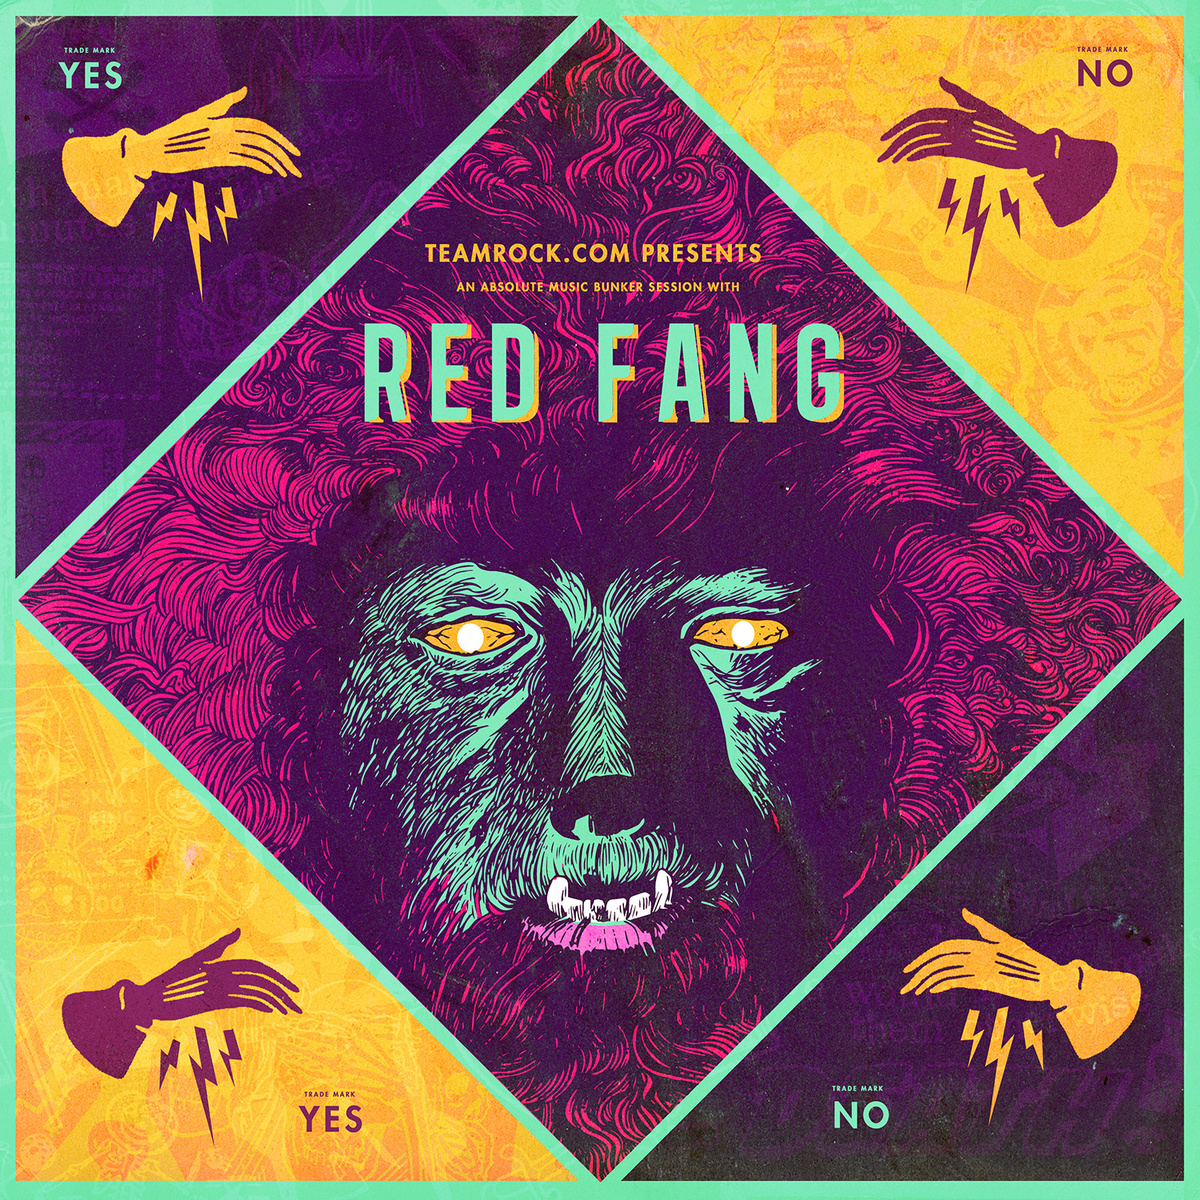 Red Fang veröffentlichen kostenlose Online-EP